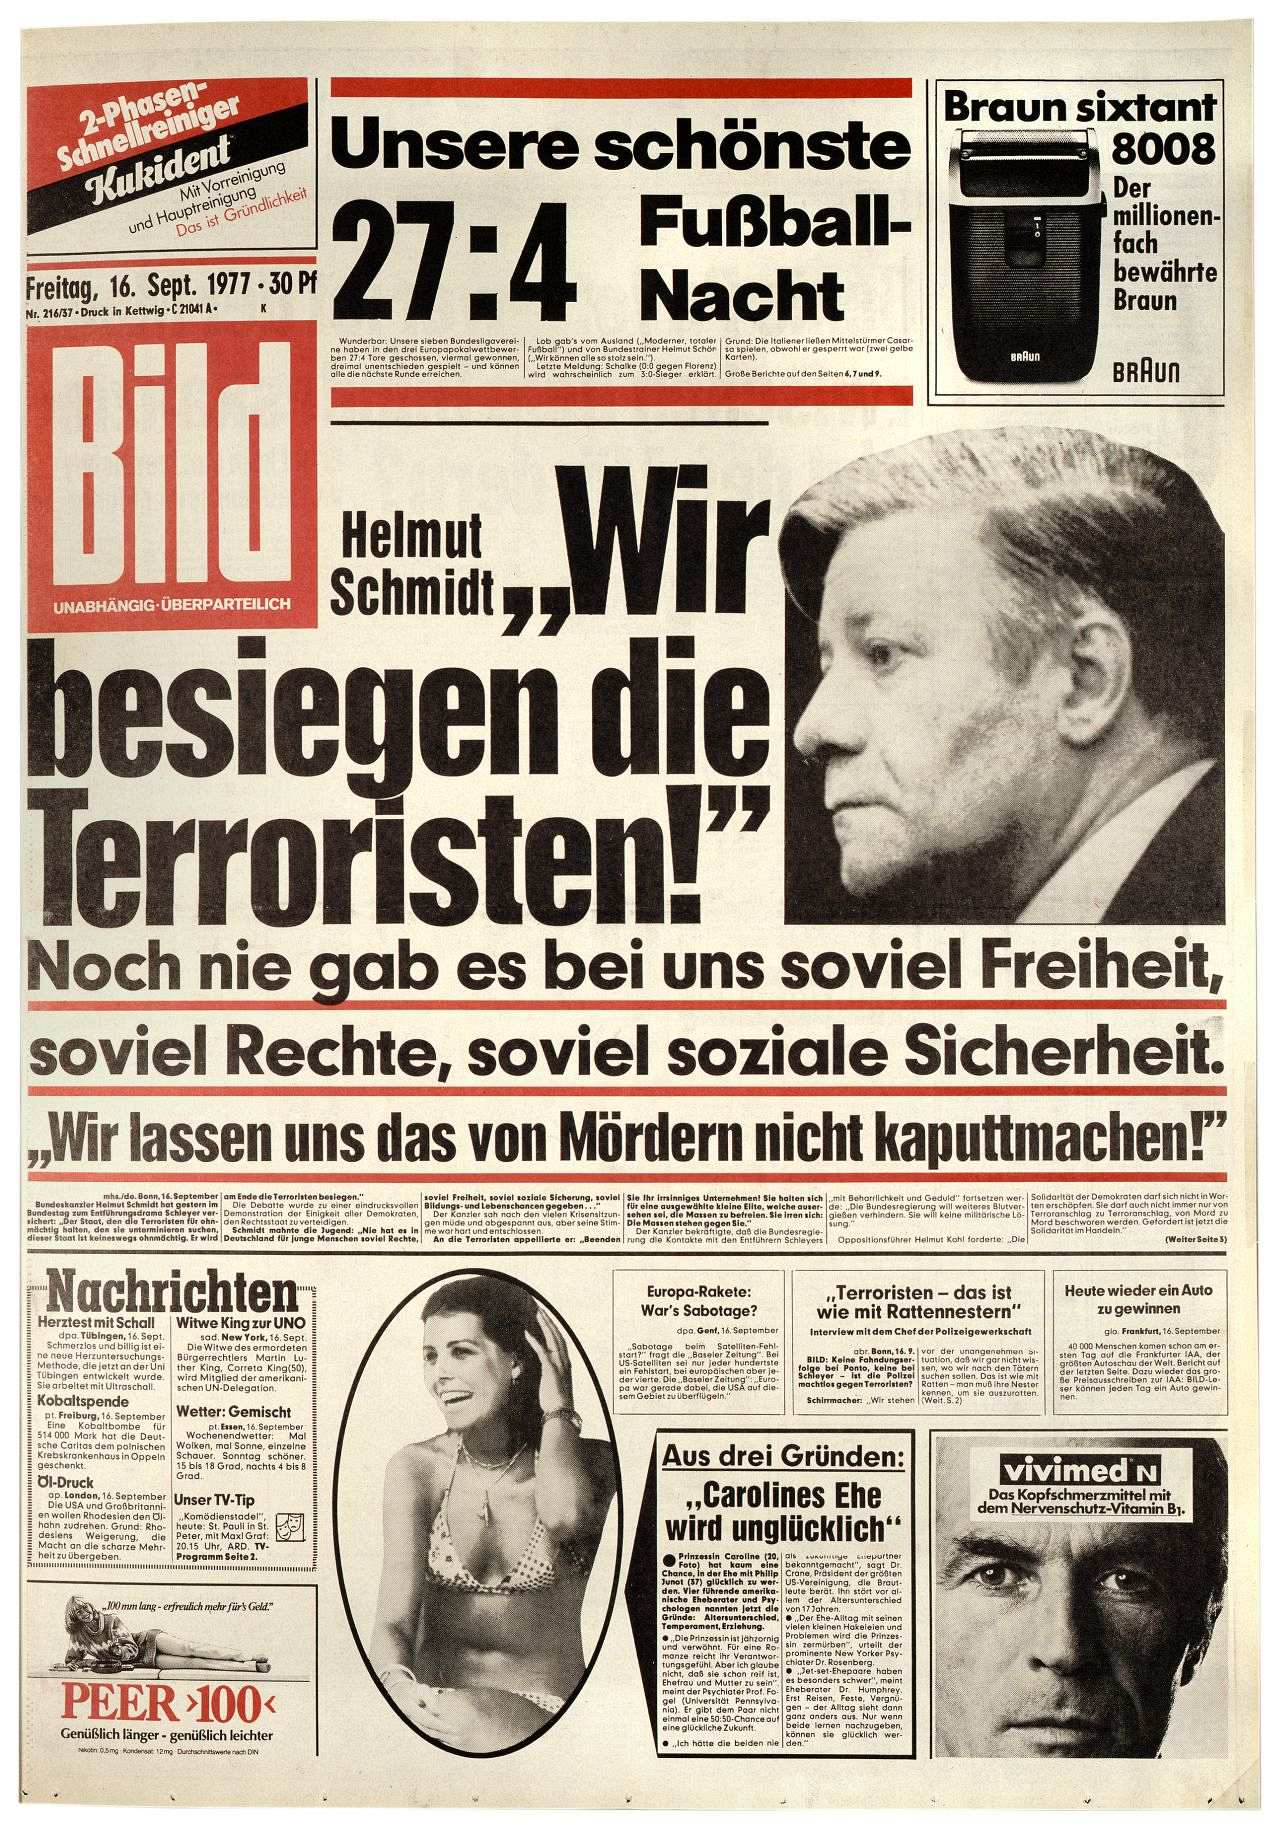 Hauptschlagzeile der Titelseite der Bildzeitung: Helmut Schmidt: Wir besiegen die Terroristen, daneben Halbporträt von Helmut Schmidt und kleinere Schlagzeilen sowie weitere Anzeigen.